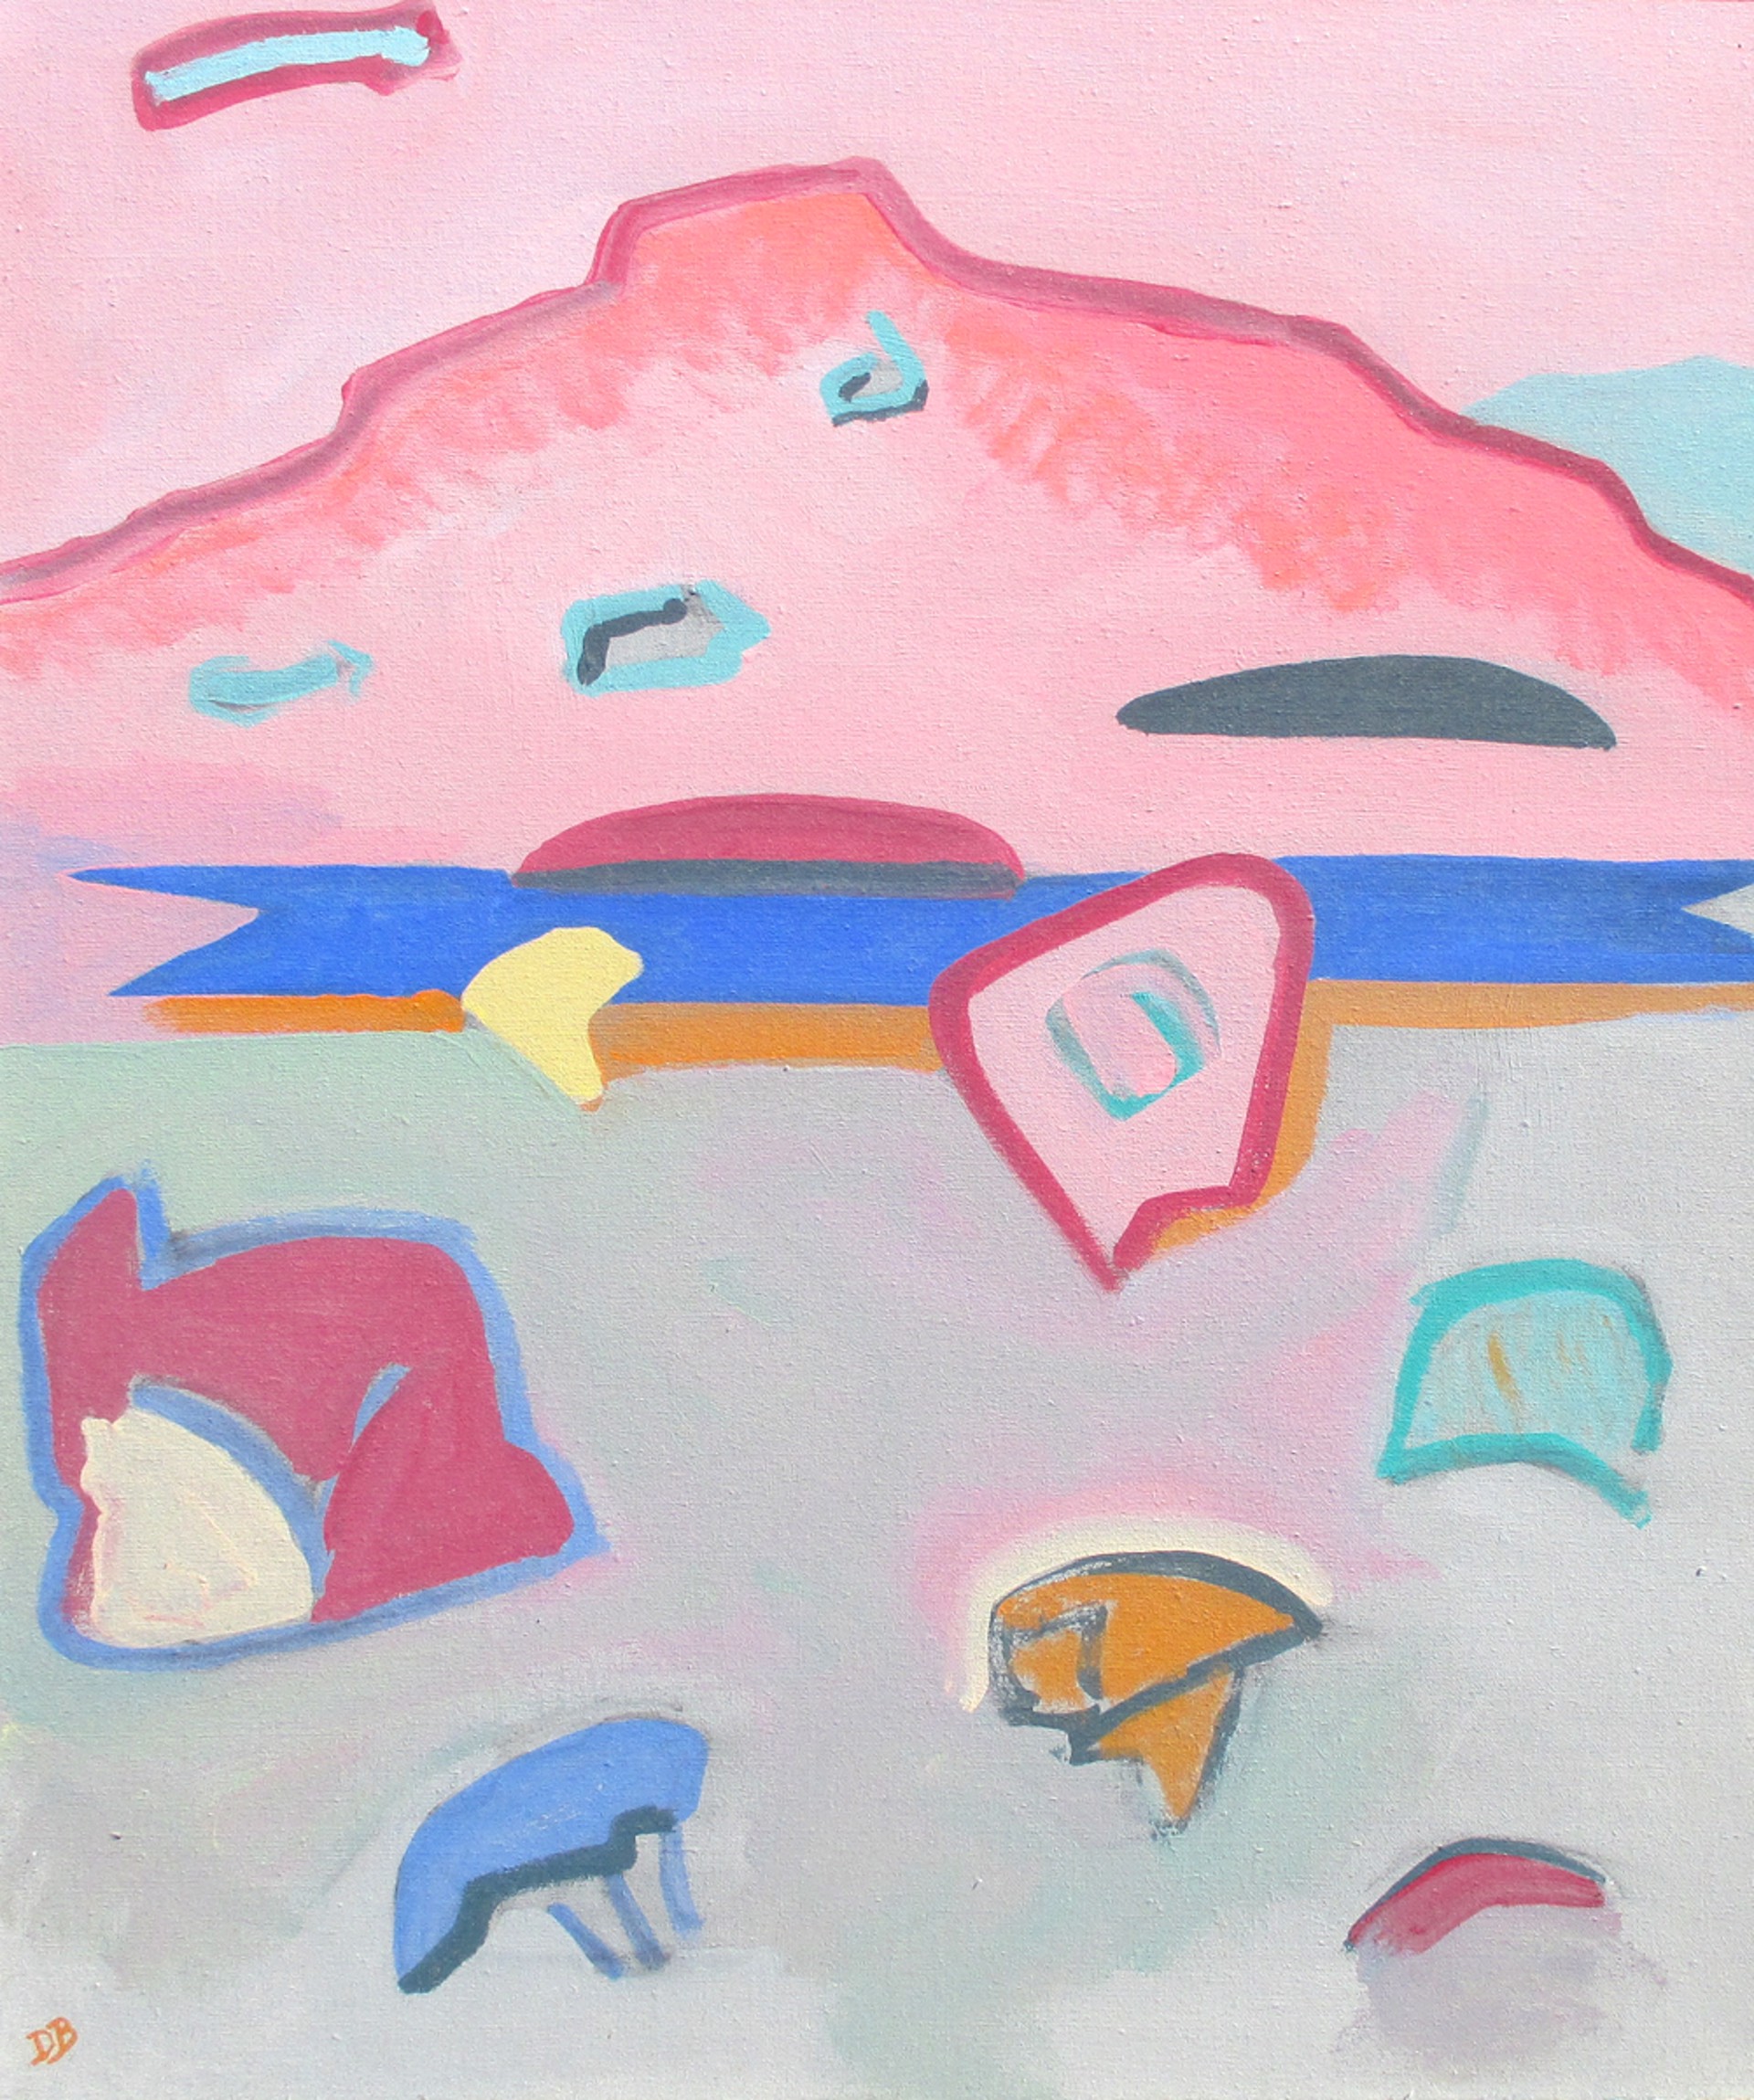 Abiquiu Lake ( invitation cover for show ) by David Barbero